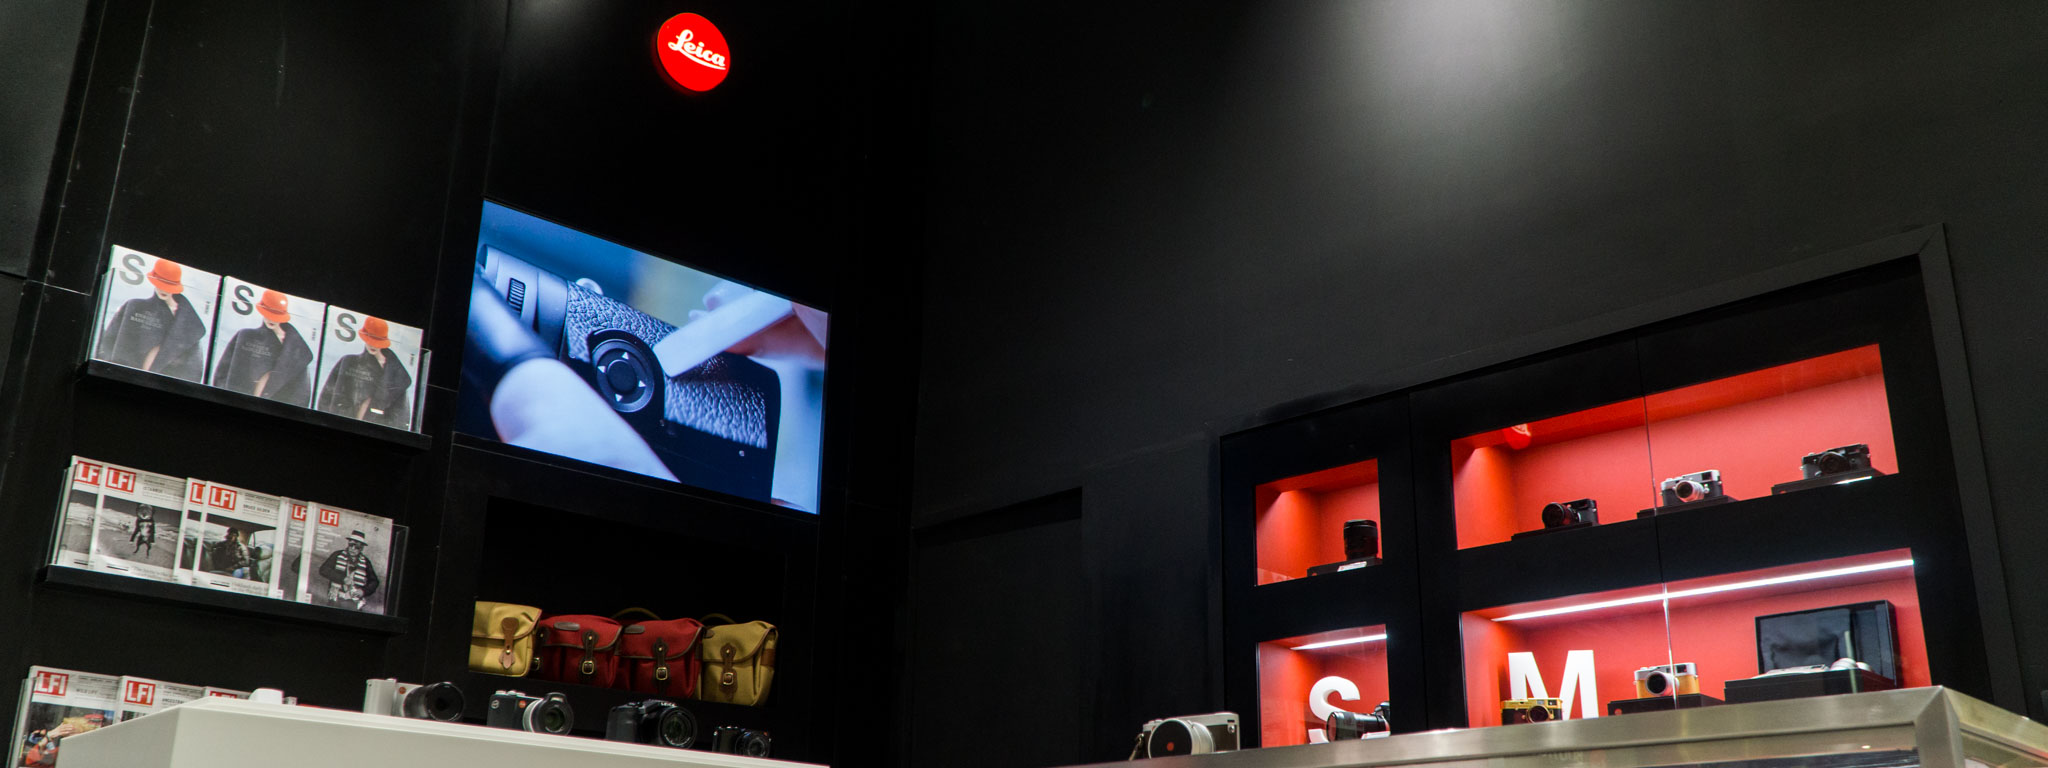 Leica Boutique đầu tiên khai trương tại Hà Nội: bán máy ảnh, ống kính và ống nhòm Leica